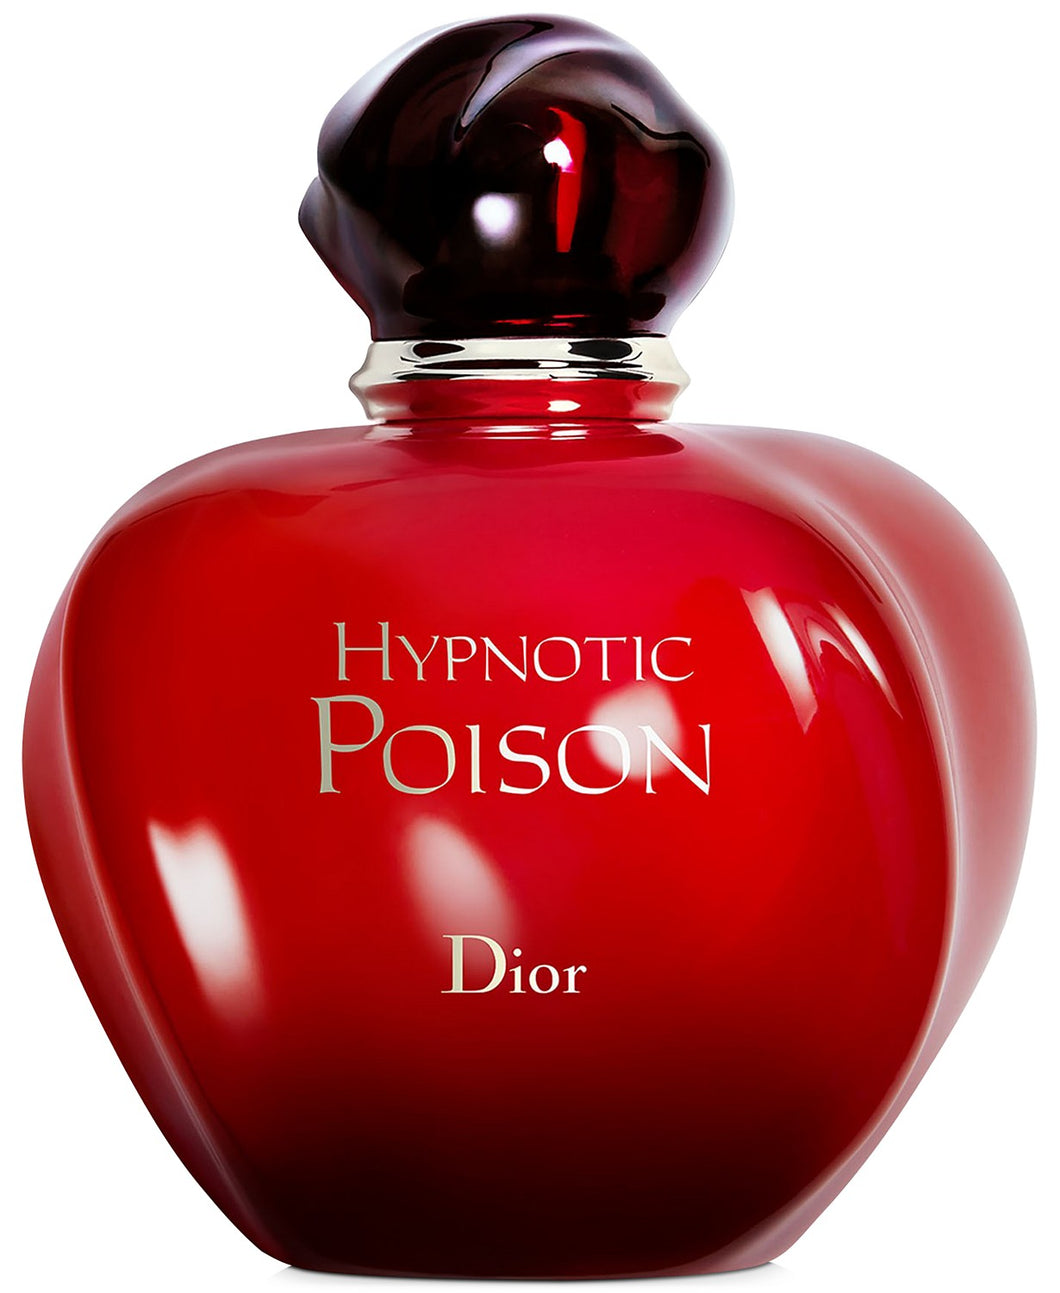 dior hypnotic poison eau de toilette 3.4oz for womans - alwaysspecialgifts.com